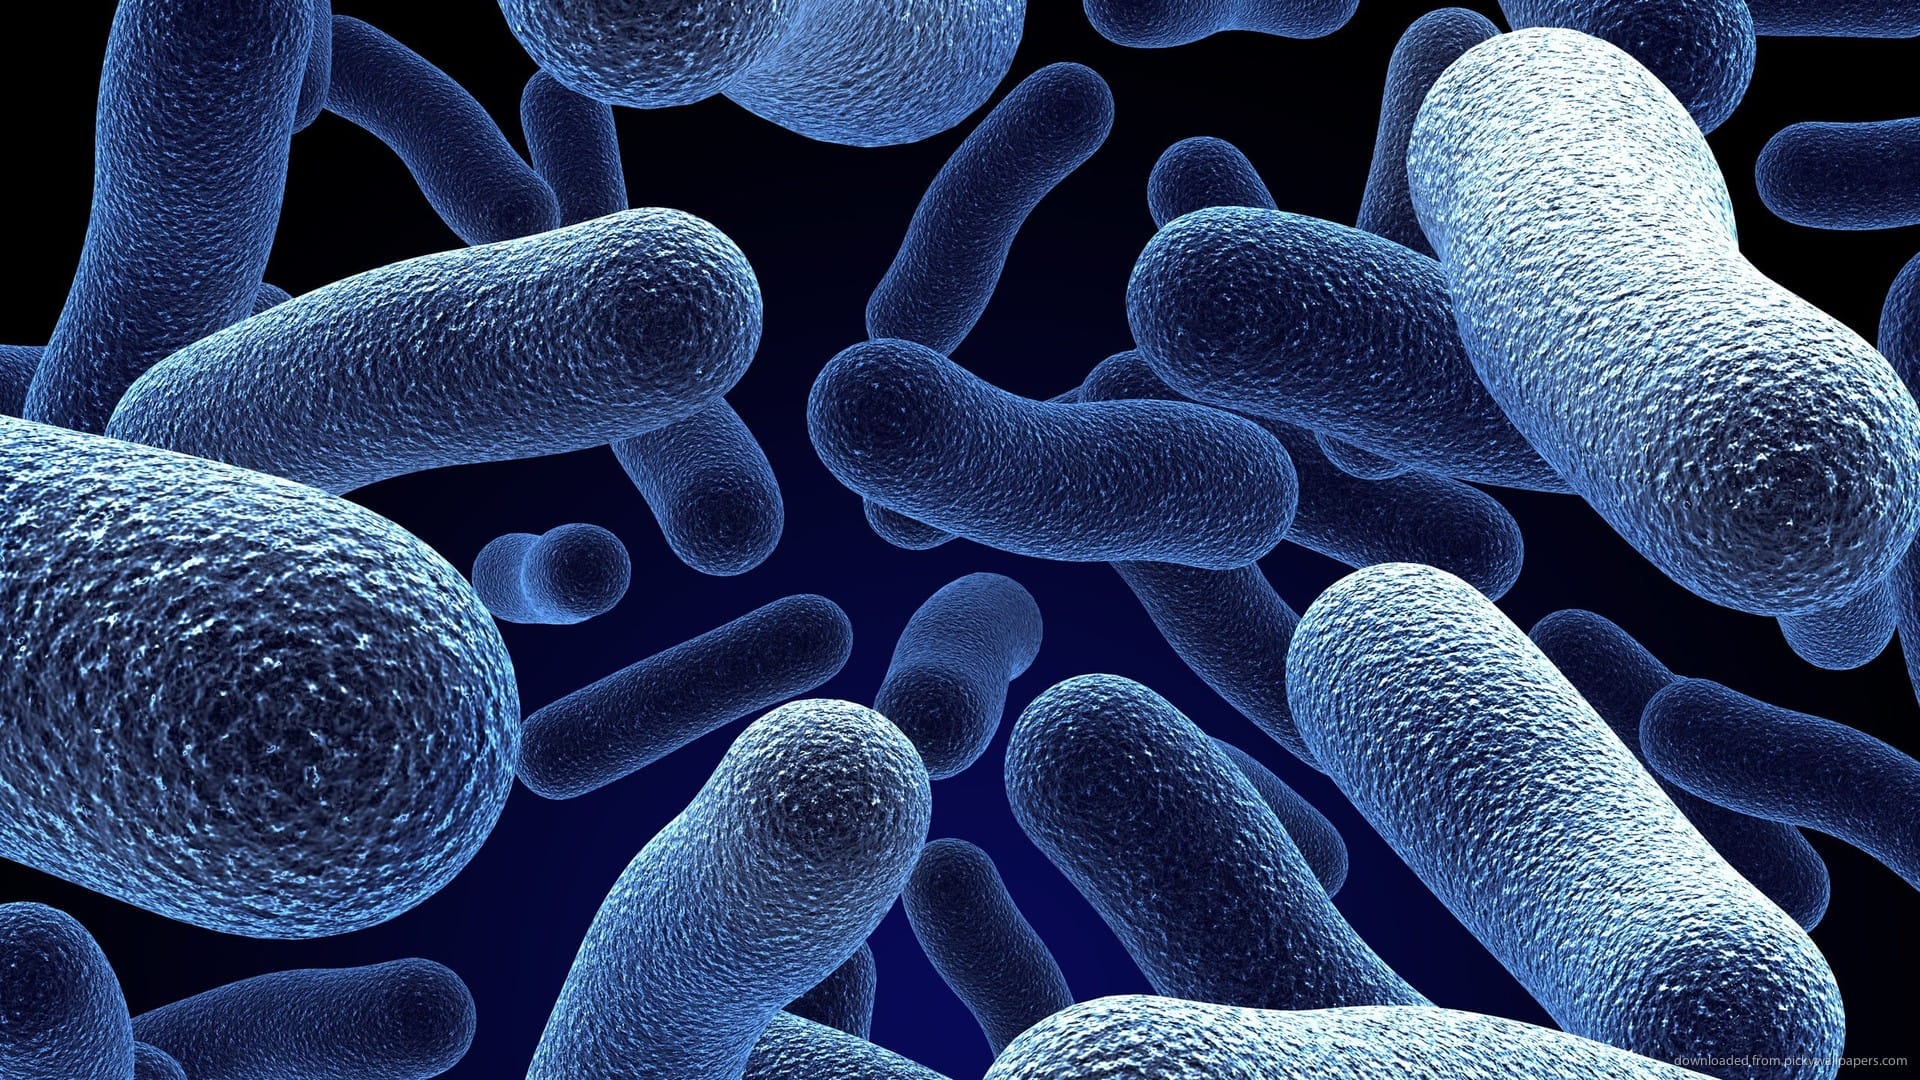 البكتيريا المفيدة وتأثيرها على الجهاز الهضمى